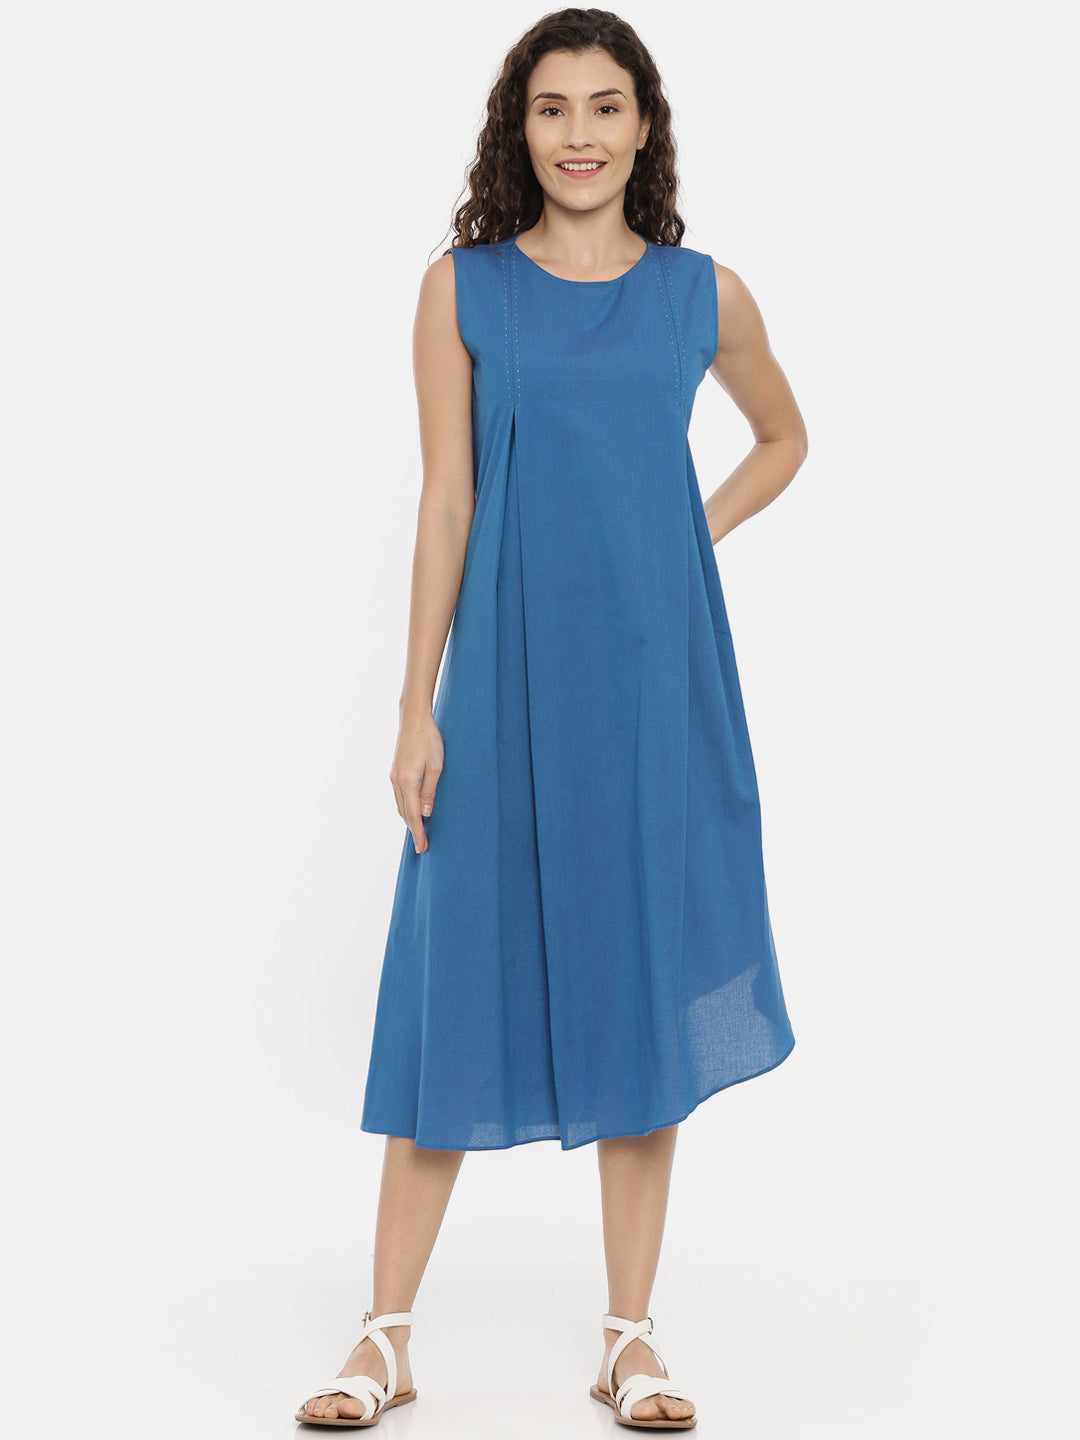 Blue Cotton Asymmetrical Dress - AS0438